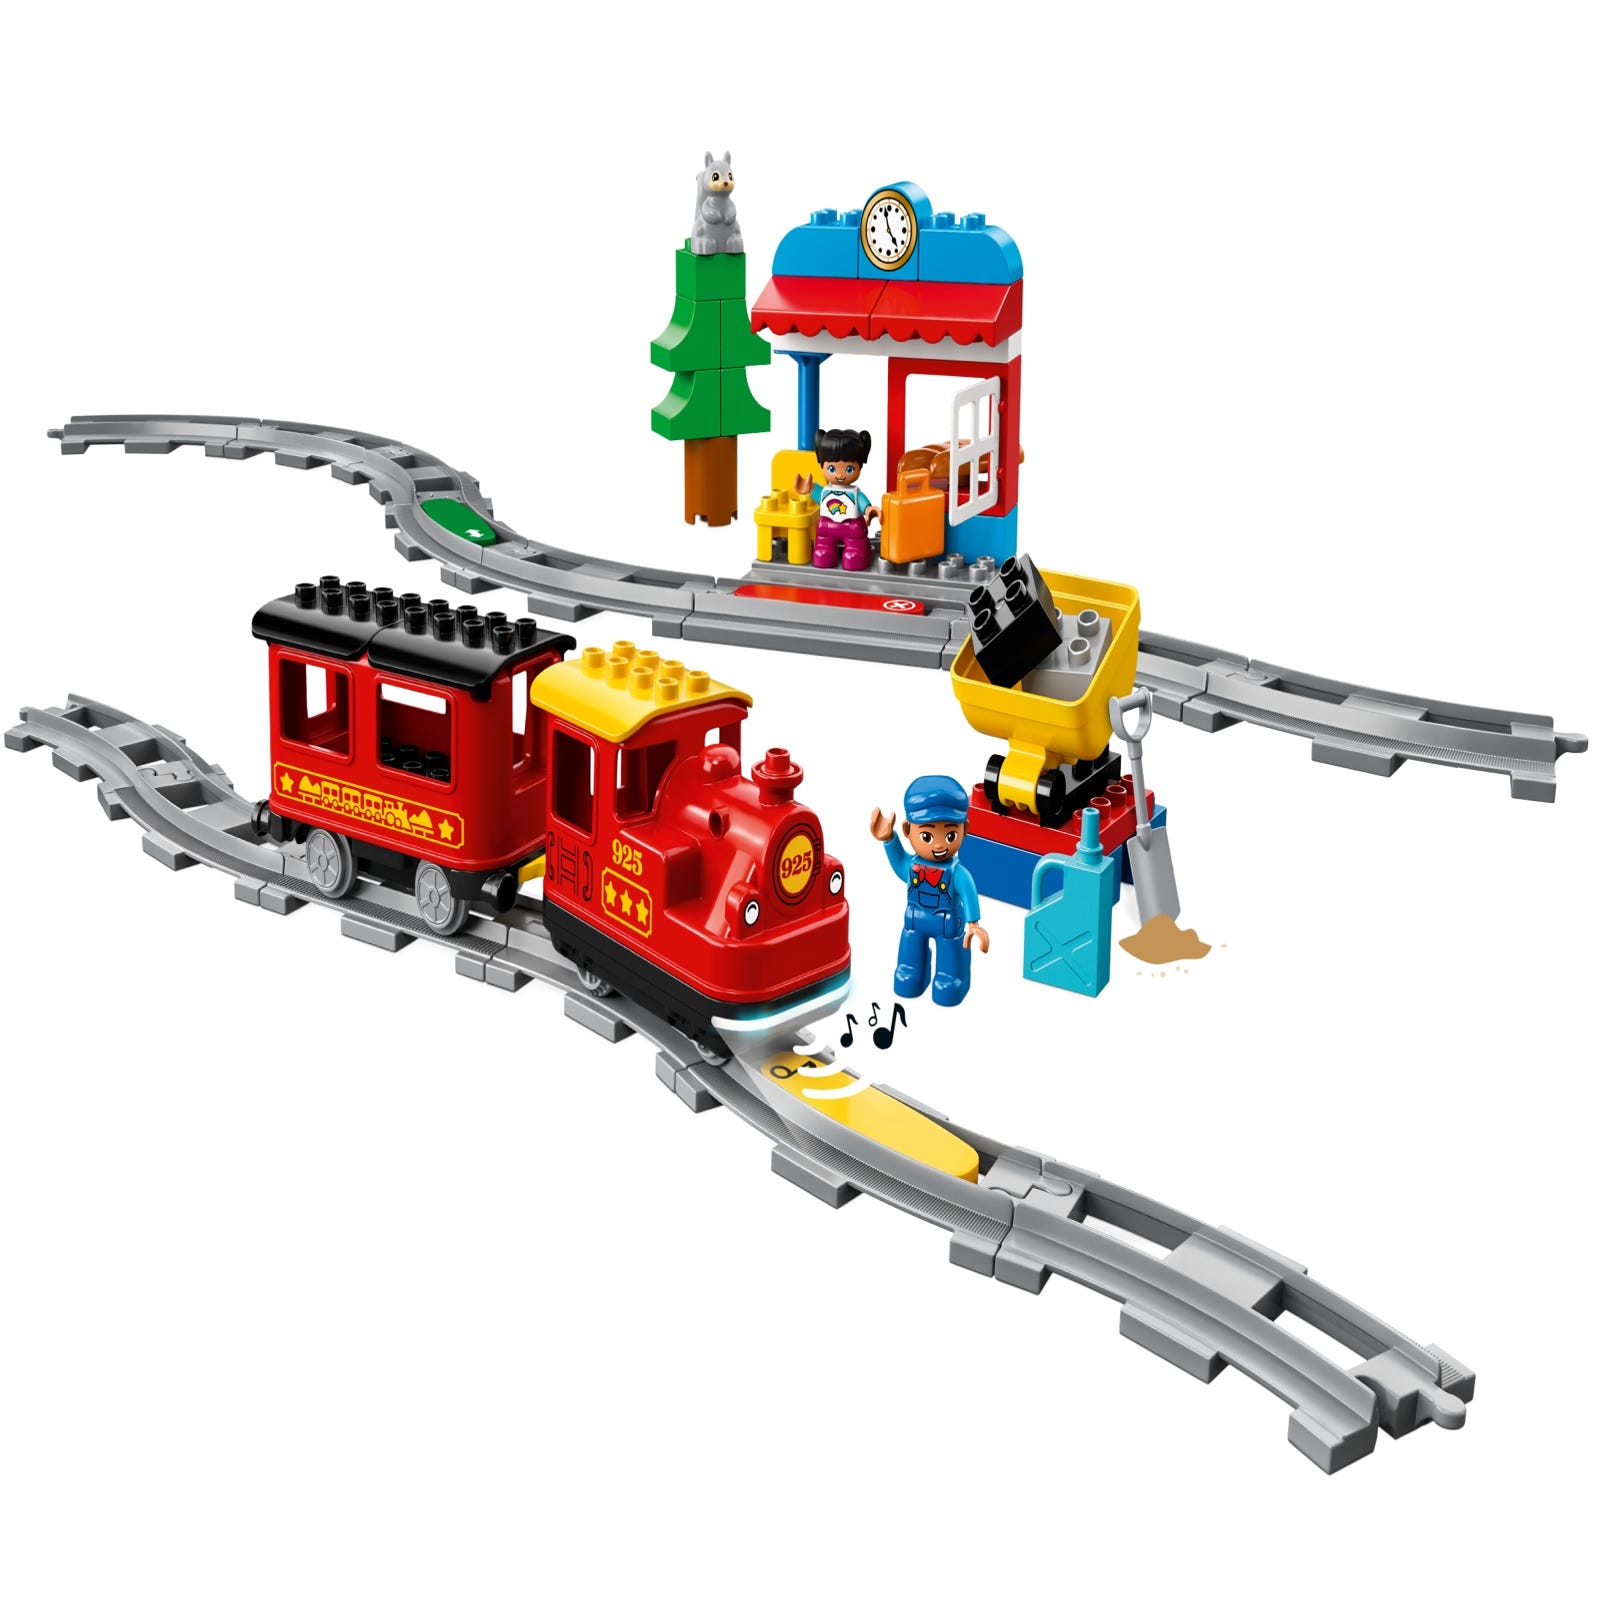 キミが車掌さん おしてgo機関車デラックス Duplo Lego Com Jp